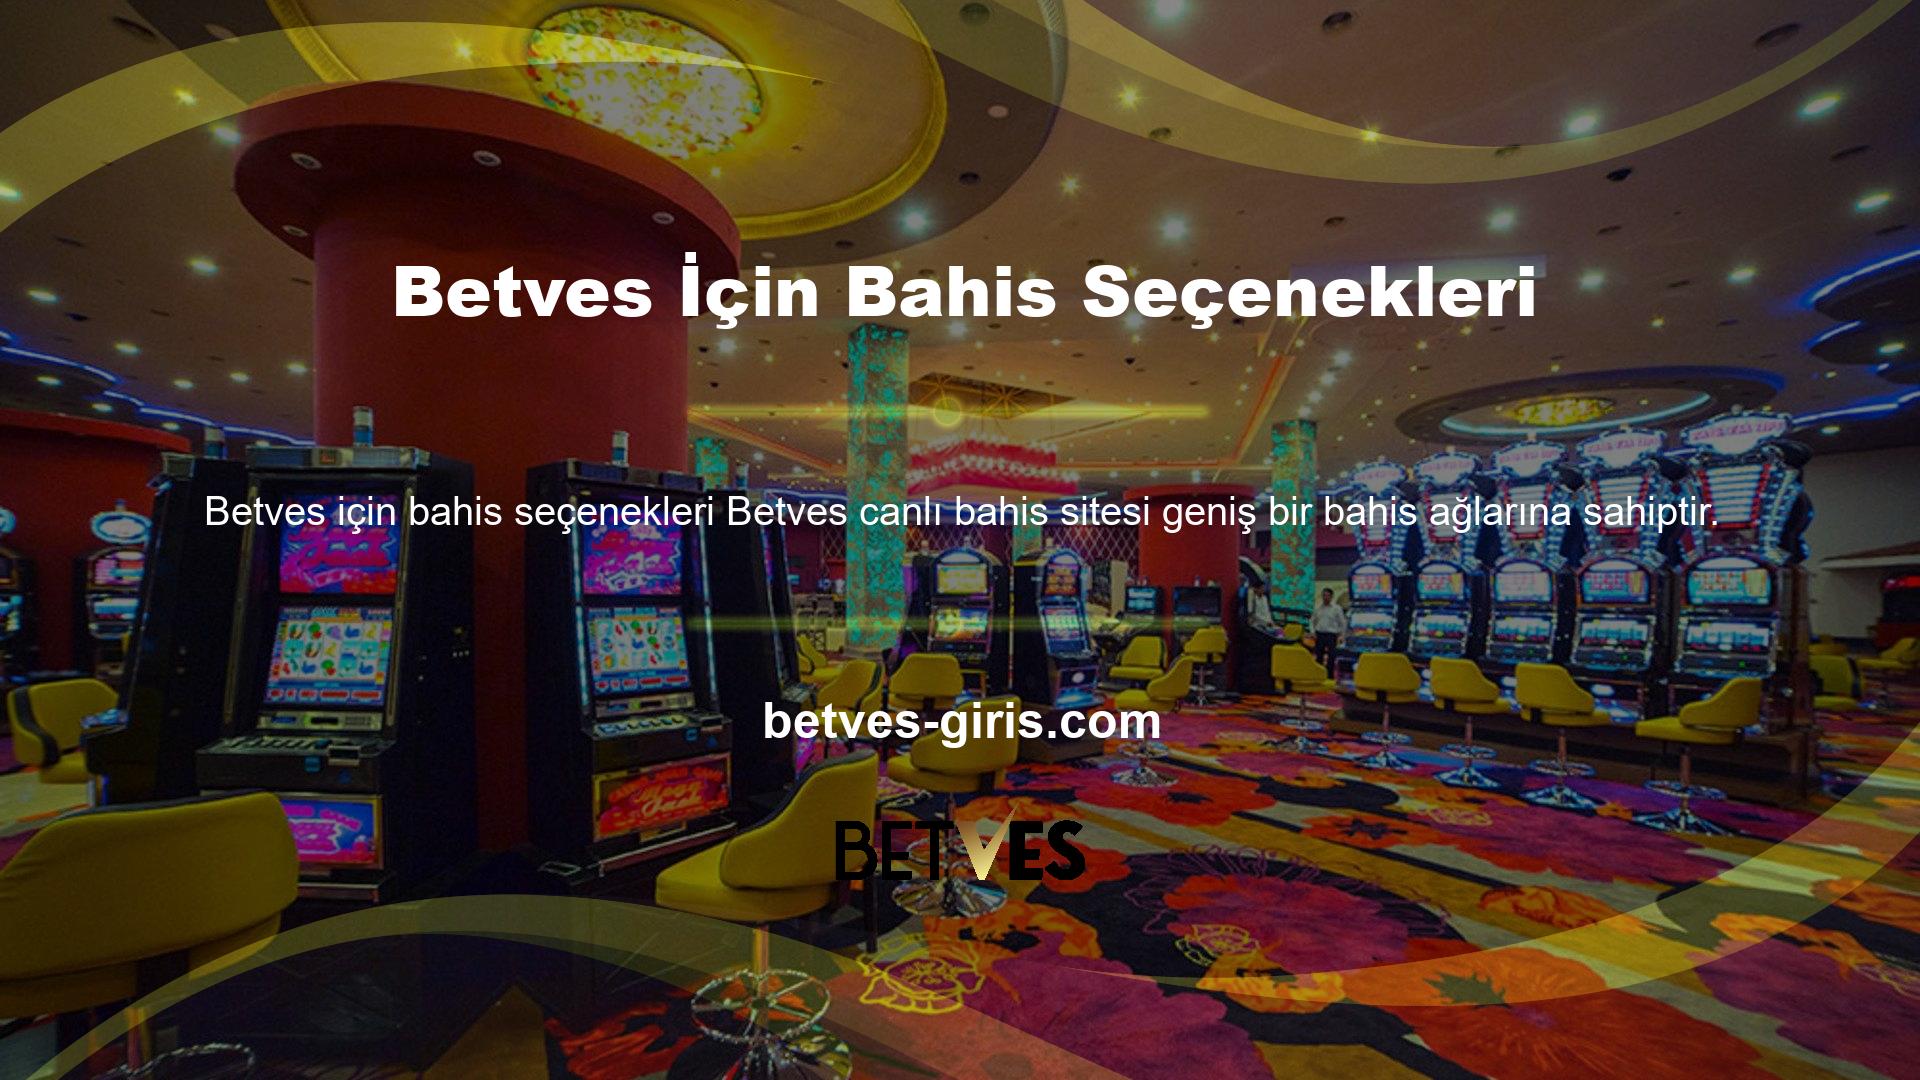 Betves Bahis Seçenekleri Web sitesinin bahis programı, profesyonel sporlardan amatör sporlara, amatör sporlardan sanal oyunlara, sanal oyunlardan casino oyunlarına kadar geniş bir yelpazedeki bahis ağlarını kapsamaktadır